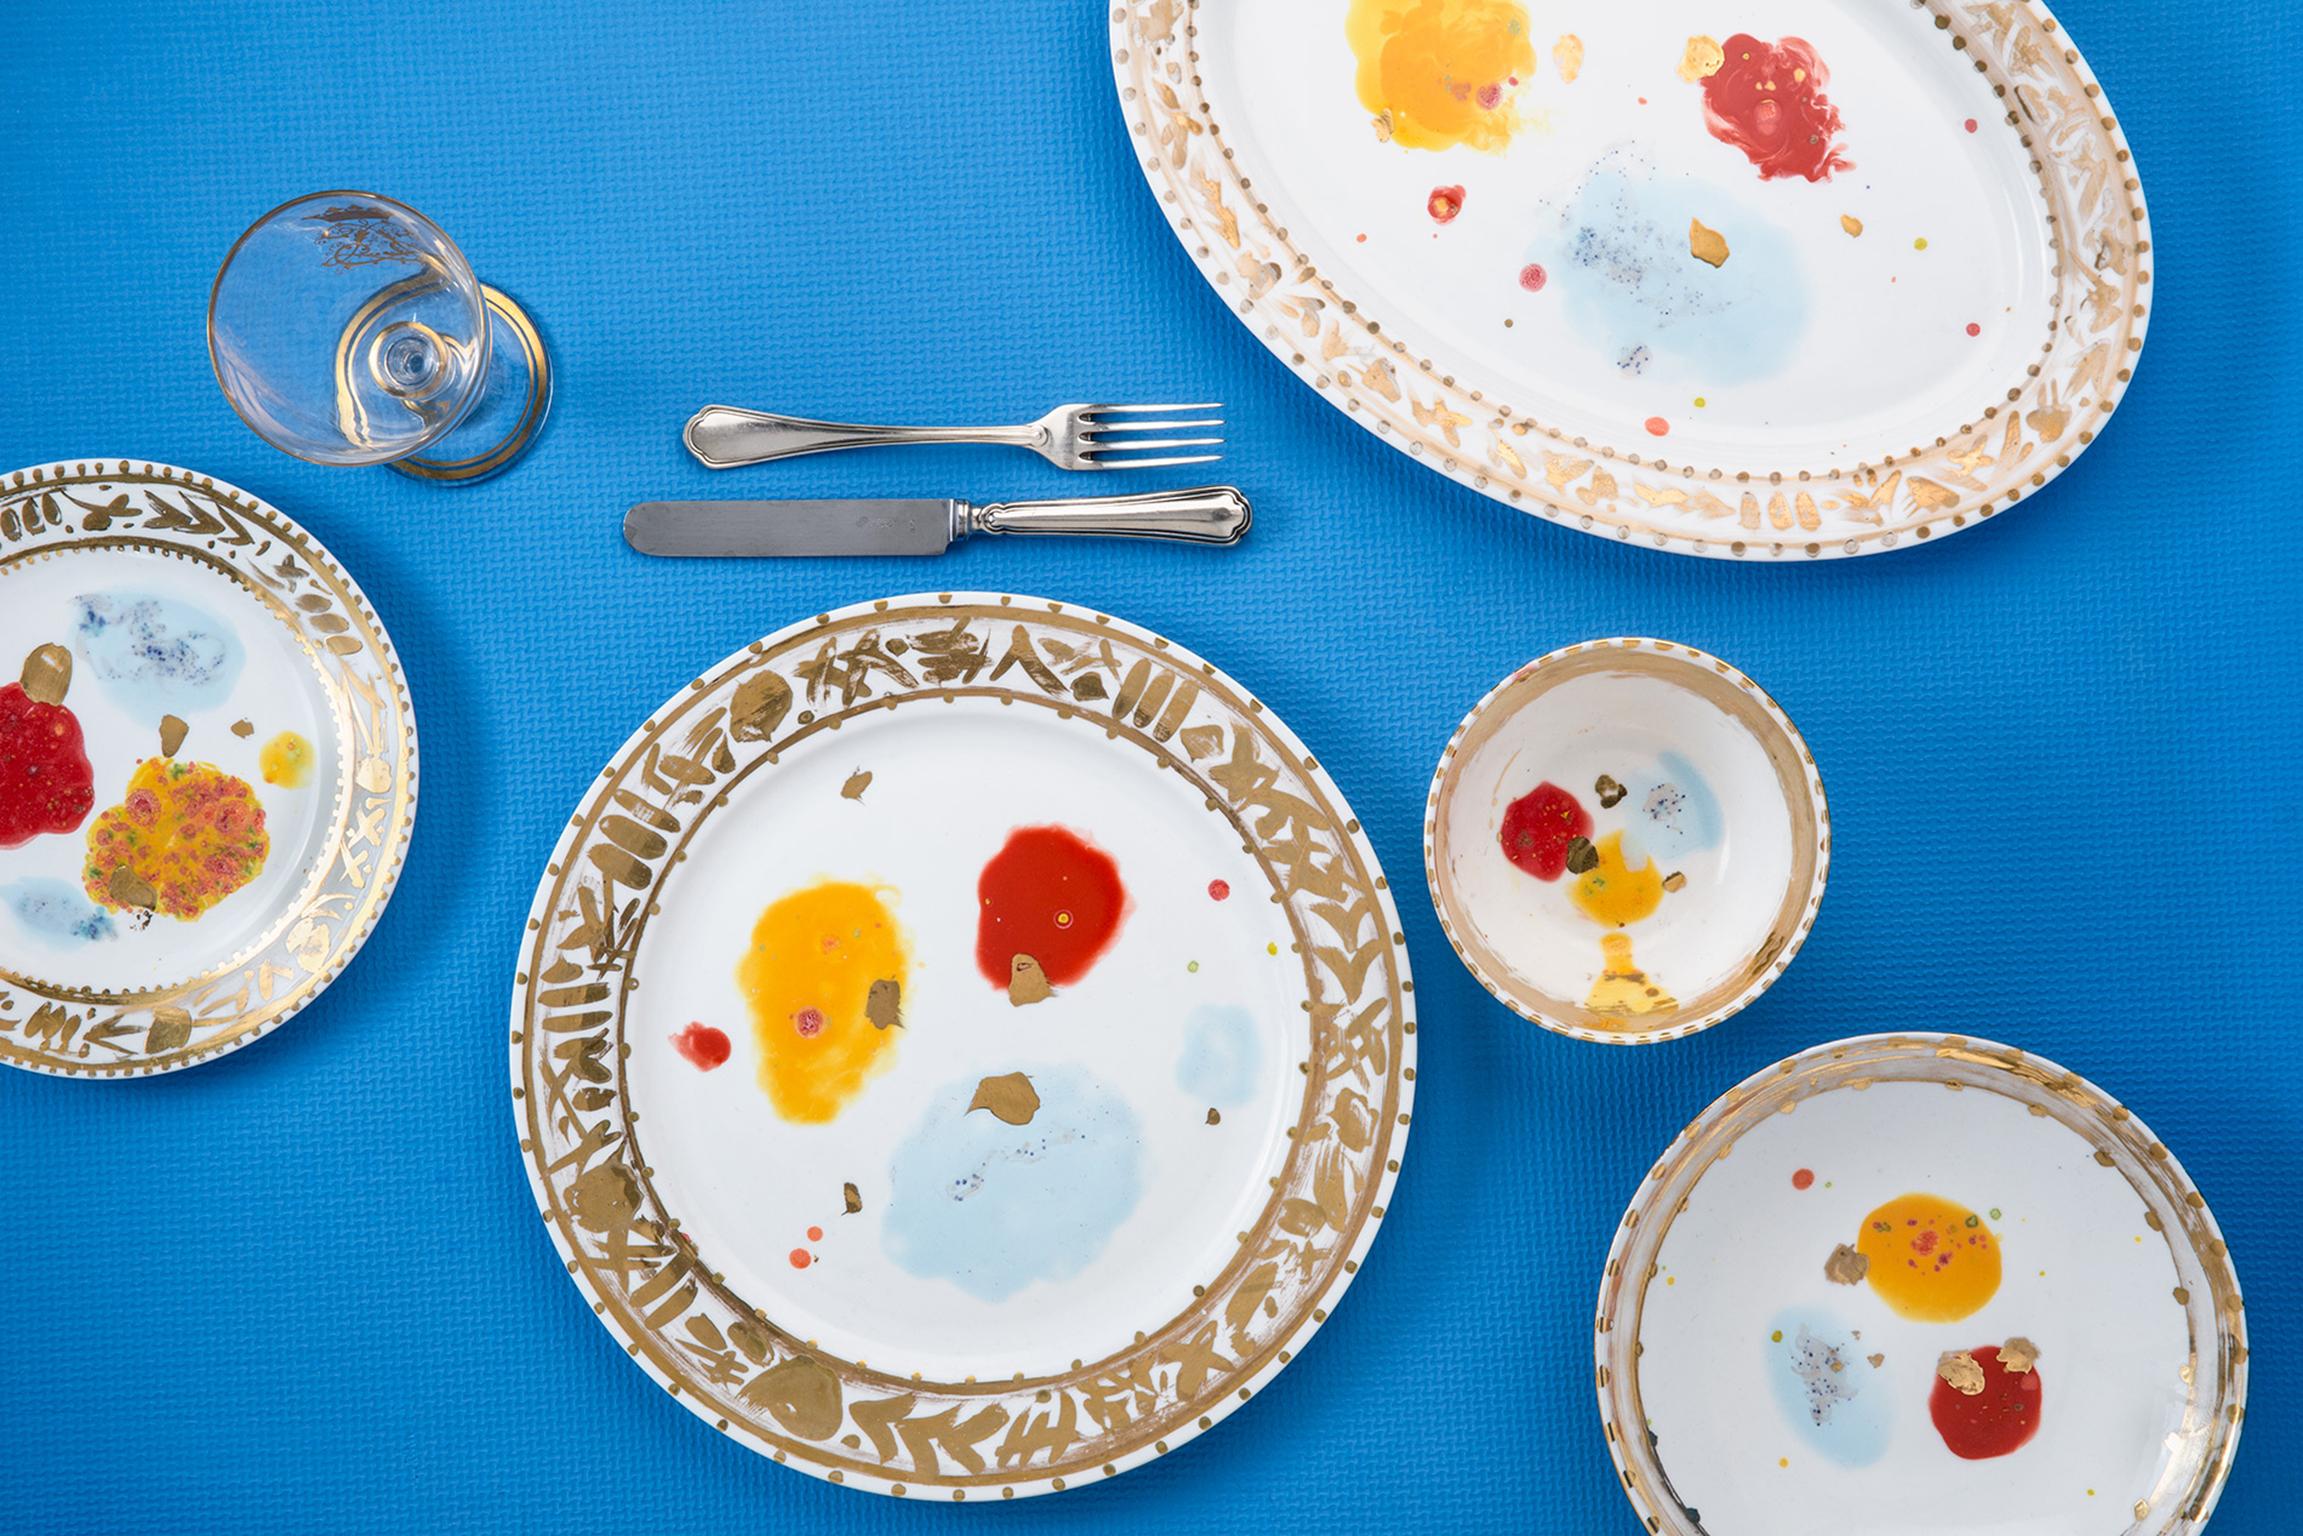 Fabriquée à la main en Italie à partir de la meilleure porcelaine, cette assiette à dessert Caravaggio souligne la tradition grâce à son décor expressif de grandes taches rouges, jaunes et bleu clair, où les passions sont contenues dans un bord doré